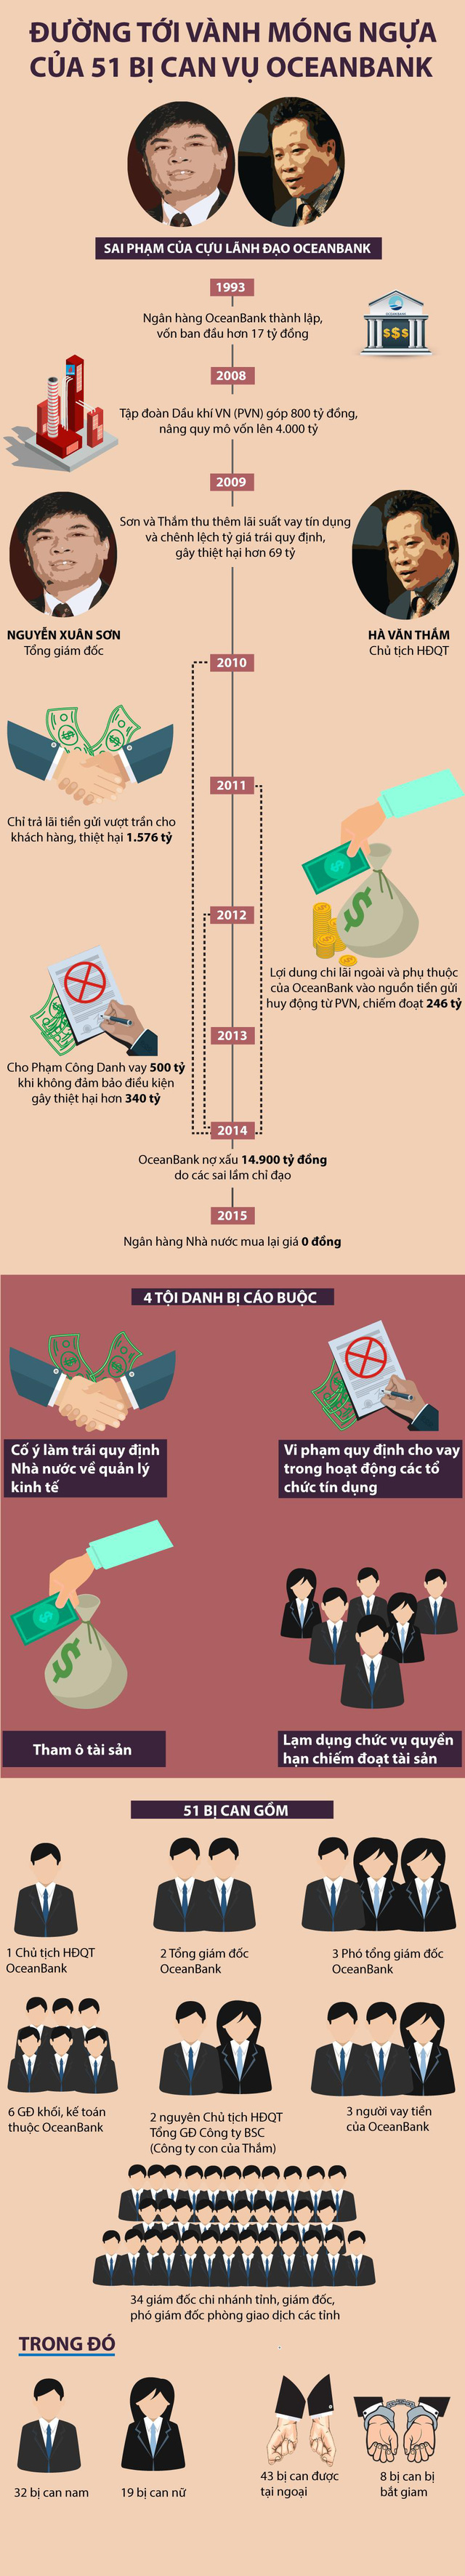  Infographic: Đường tới vành móng ngựa của Hà Văn Thắm  - Ảnh 1.